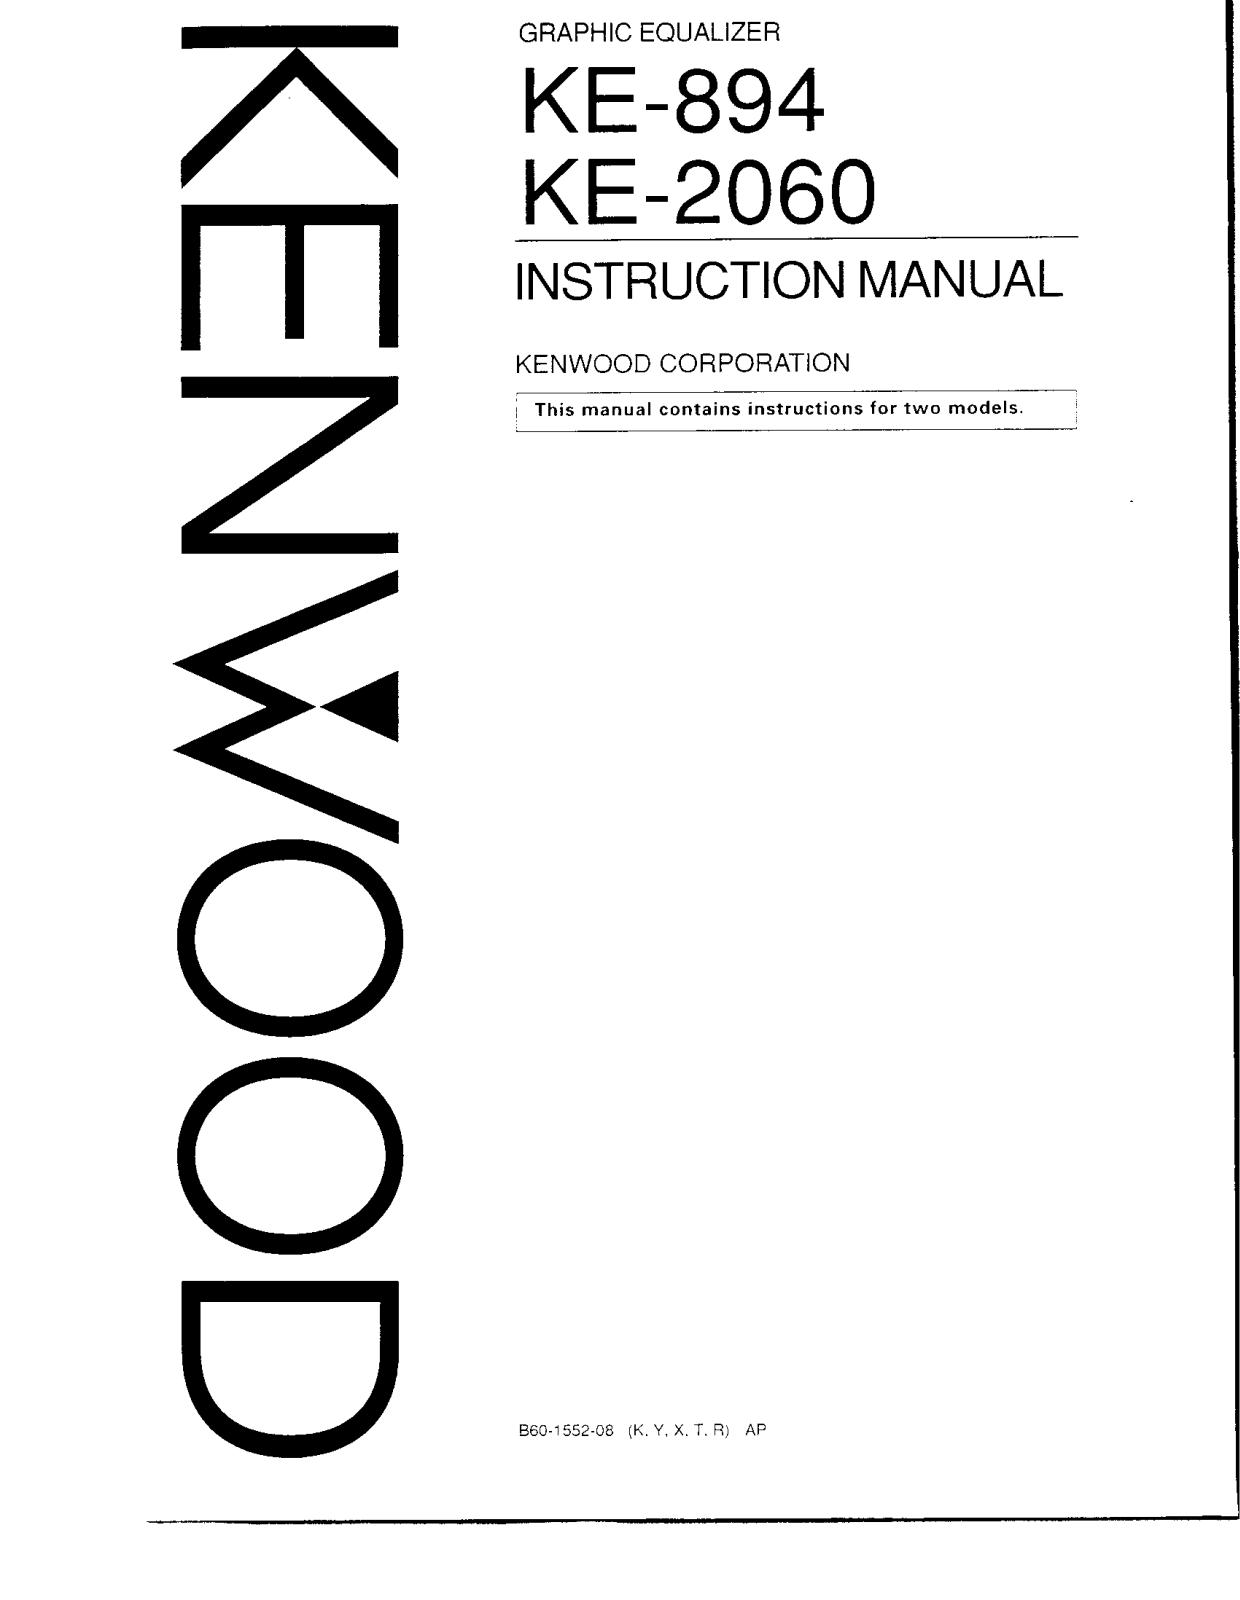 Kenwood KE-2060, KE-894 Owner's Manual